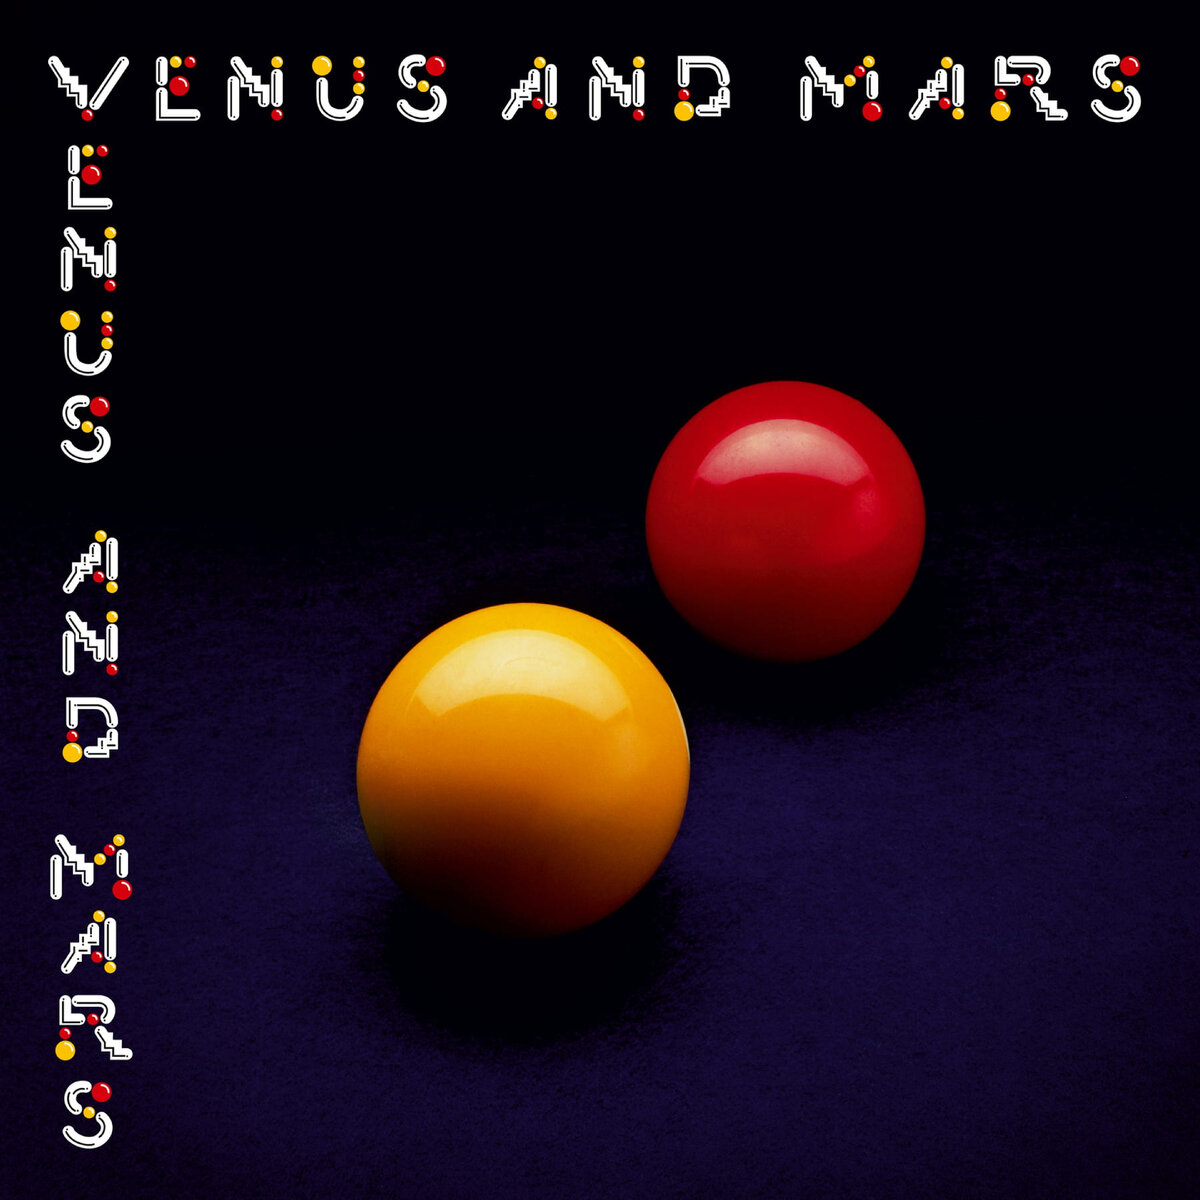 Venus And Mars был выпущен как в Великобритании, так и в США 30 мая 1975 года. Архивная коллекция Venus and Mars (Archive Collection) вышла 3 ноября 2014 года.